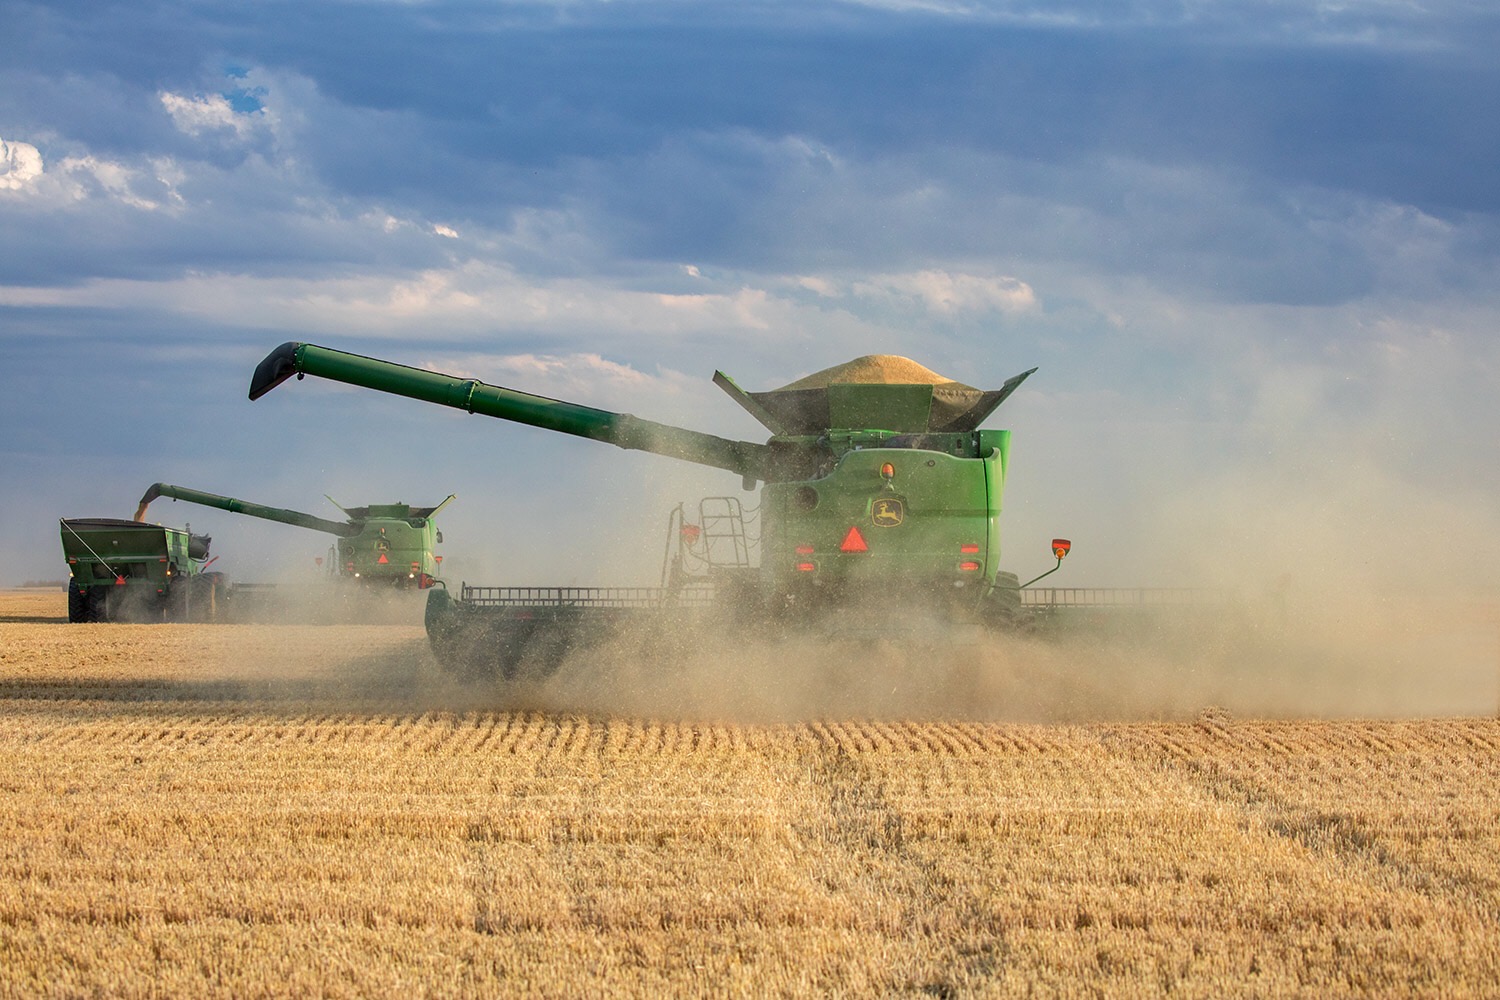 Уборка-2020: намолочено более 7 млн тонн зерновых и зернобобовых